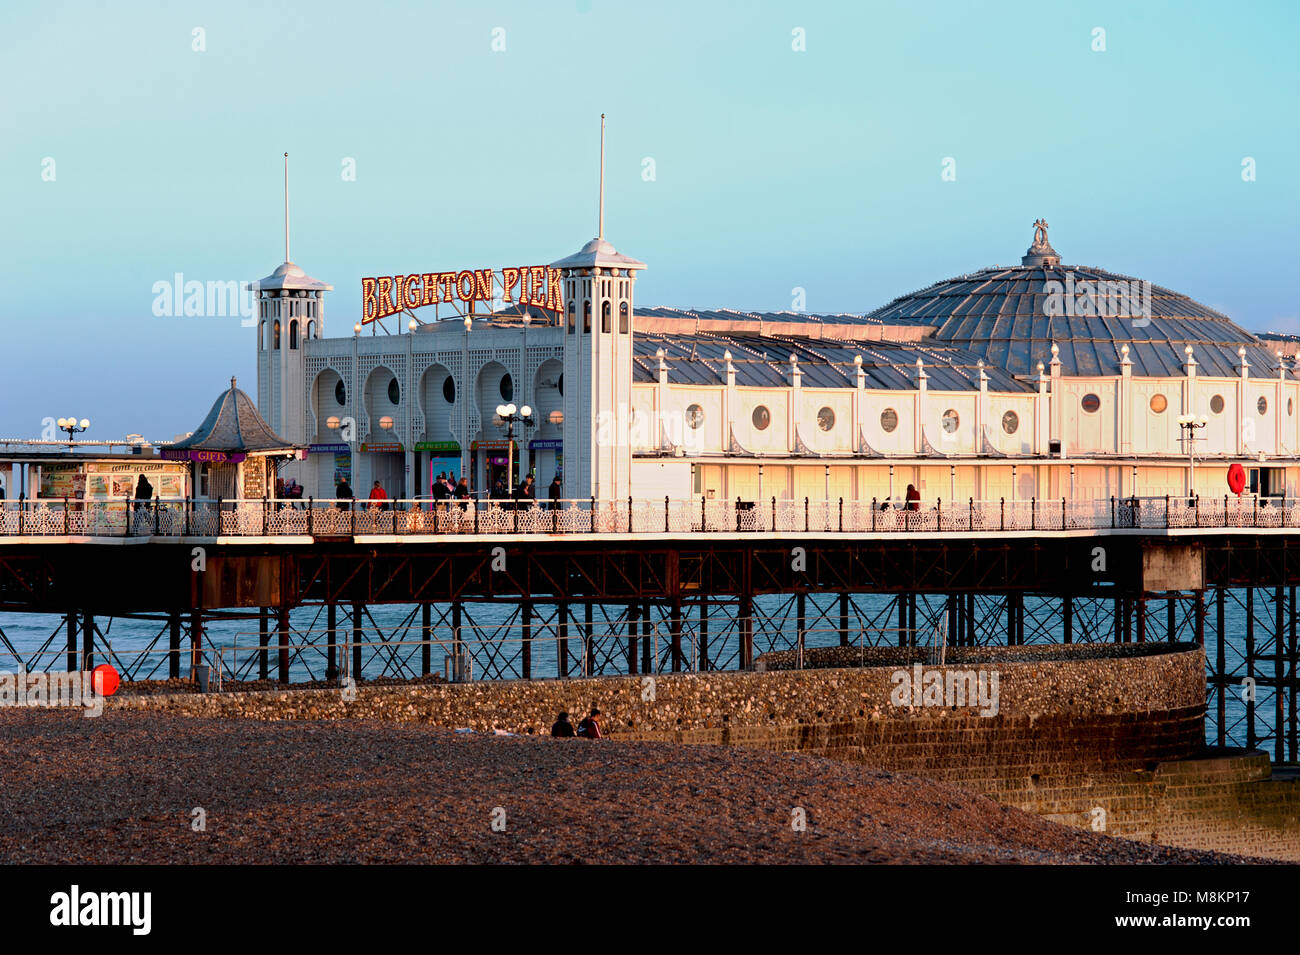 Pier von Brighton, Brighton und Hove, Großbritannien, 2018. den Brighton Pier, auch genannt das Palace Pier, ist eines der beliebtesten touristischen Reiseziele in England. Stockfoto